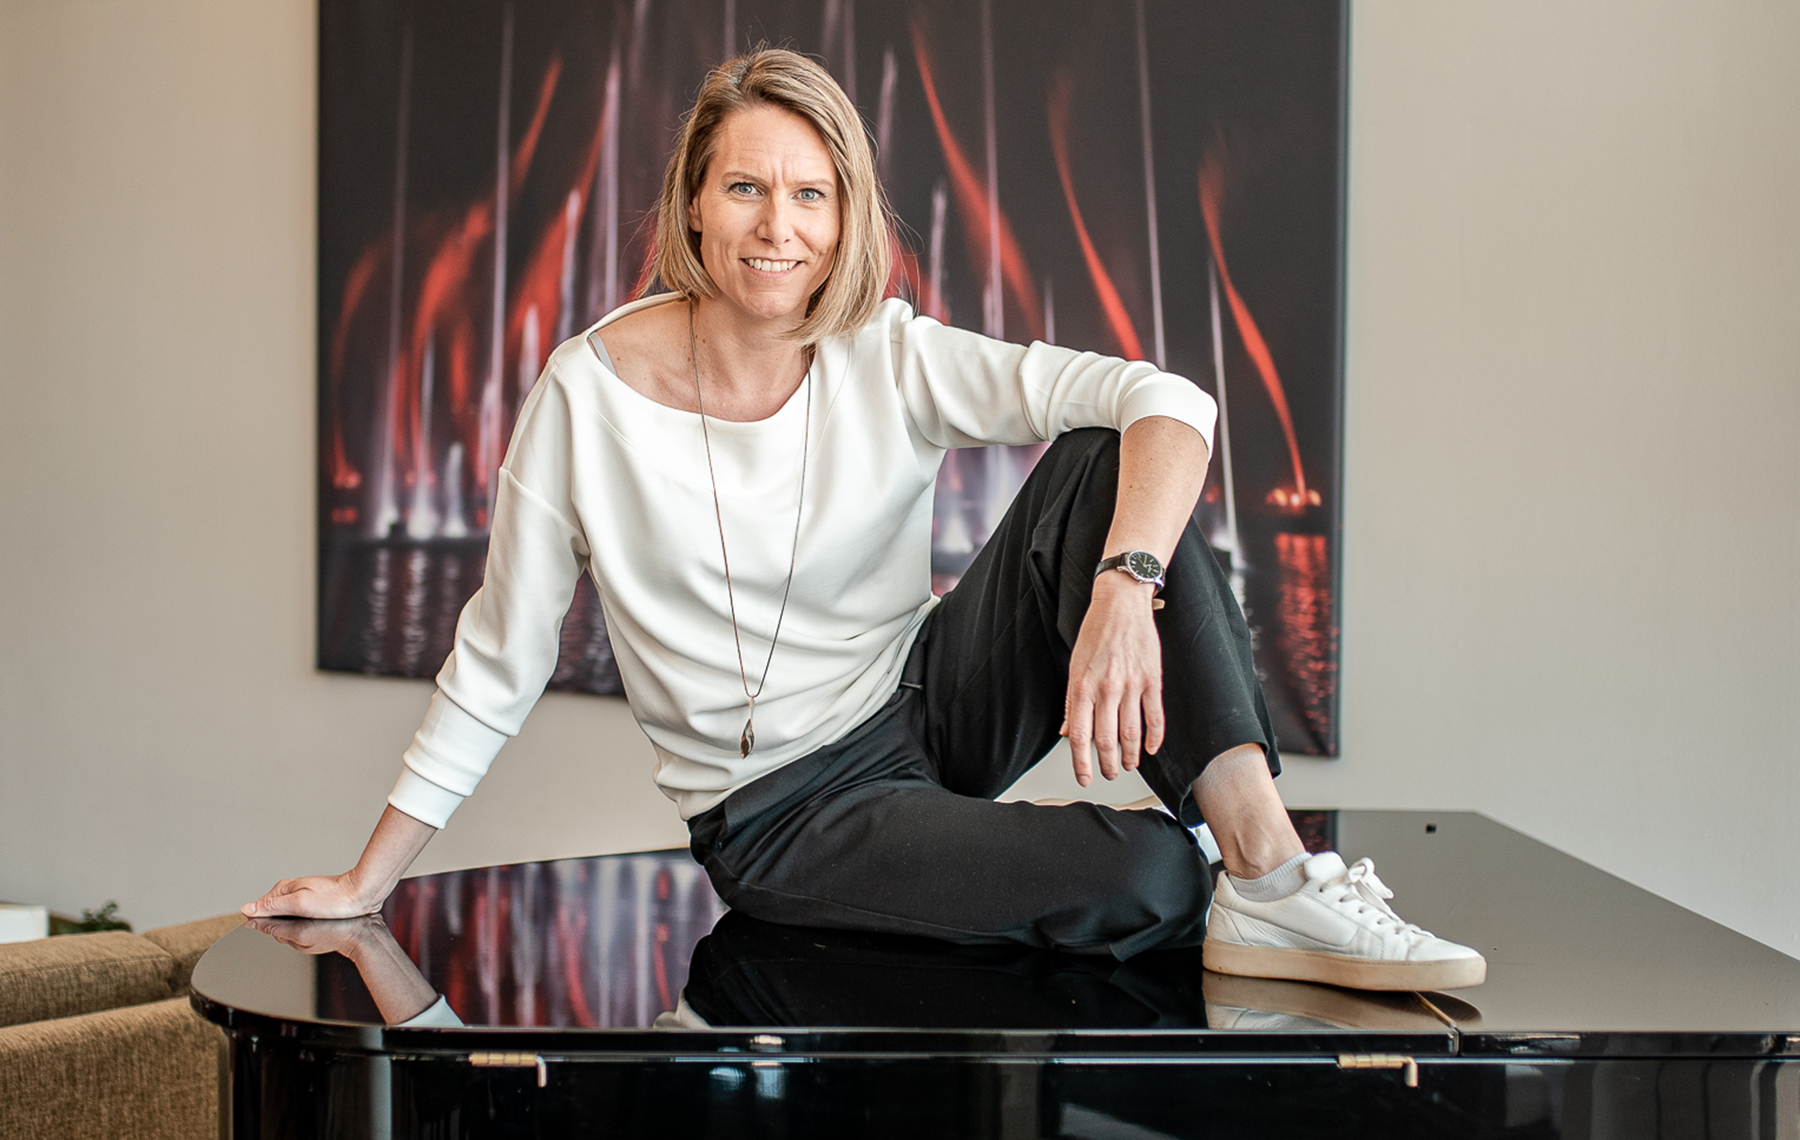 Vorschau Downloads & Presse | Sigrid Tschiedl auf Klavier | InsideOut communication